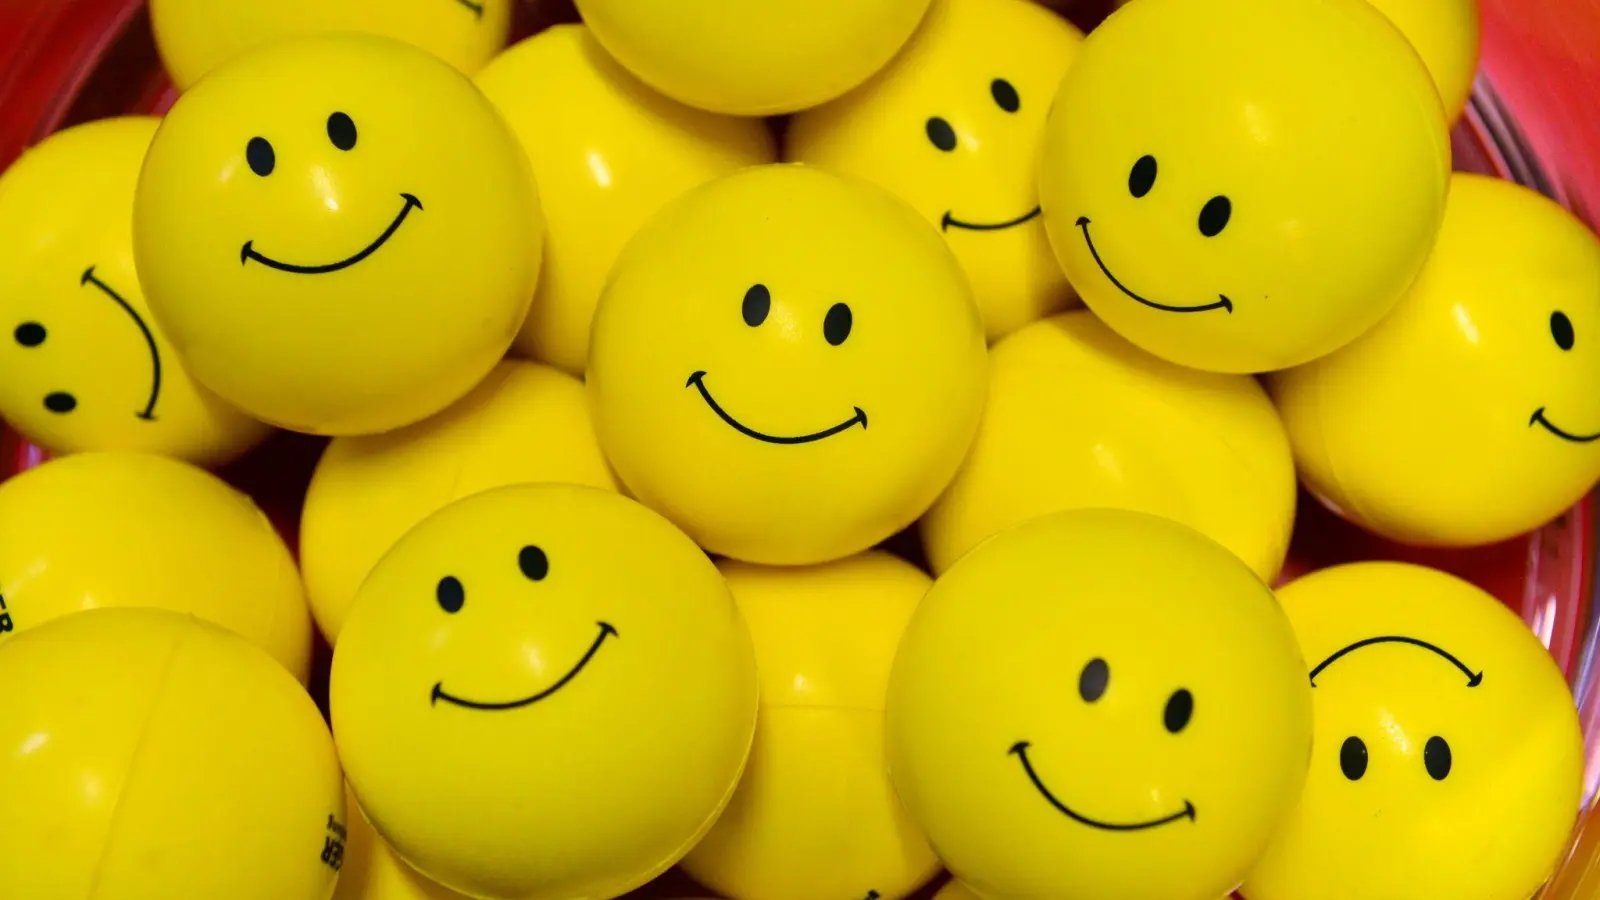 Das Lebensziel vieler Menschen ist es, Glück zu finden. Doch Ratgeber und Co. bauen einen gesellschaftlichen Glücks-Druck auf, von dem es sich eher freizumachen gilt. (Foto: Martin Schutt/dpa-Zentralbild/dpa/Archiv)